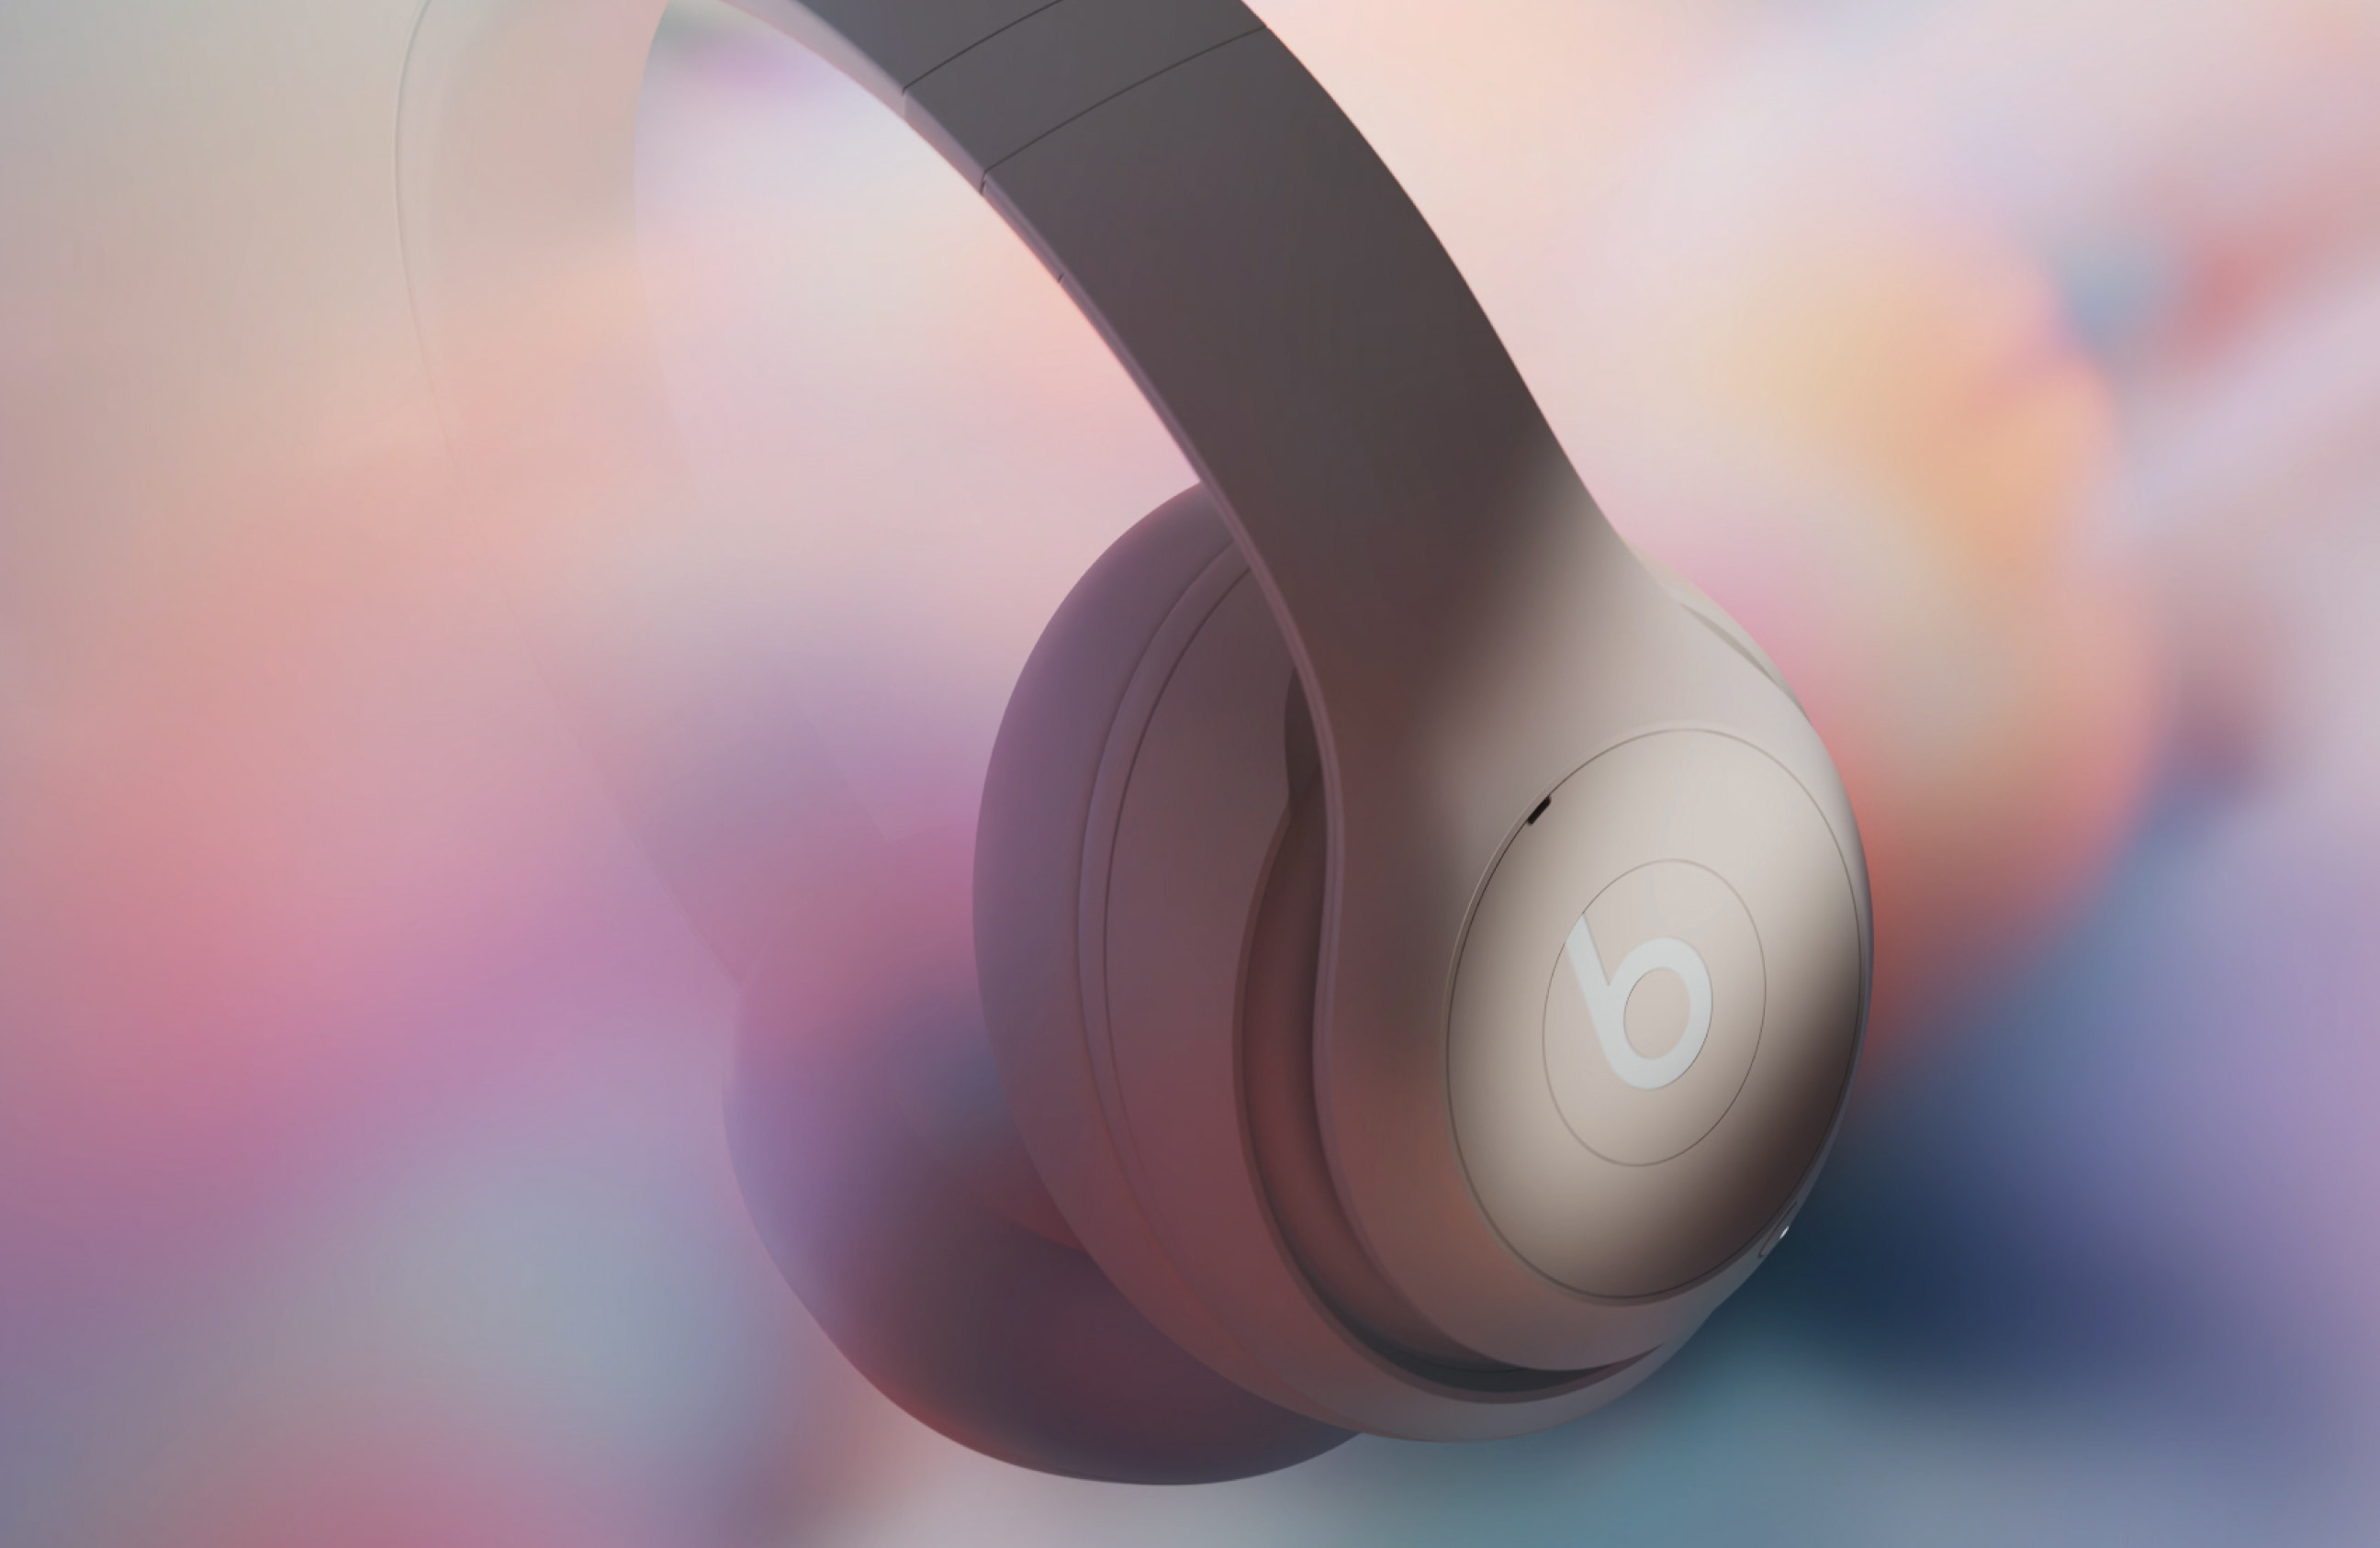 Beats Studio Pro 無線頭戴式耳機具備個人化空間音訊功能